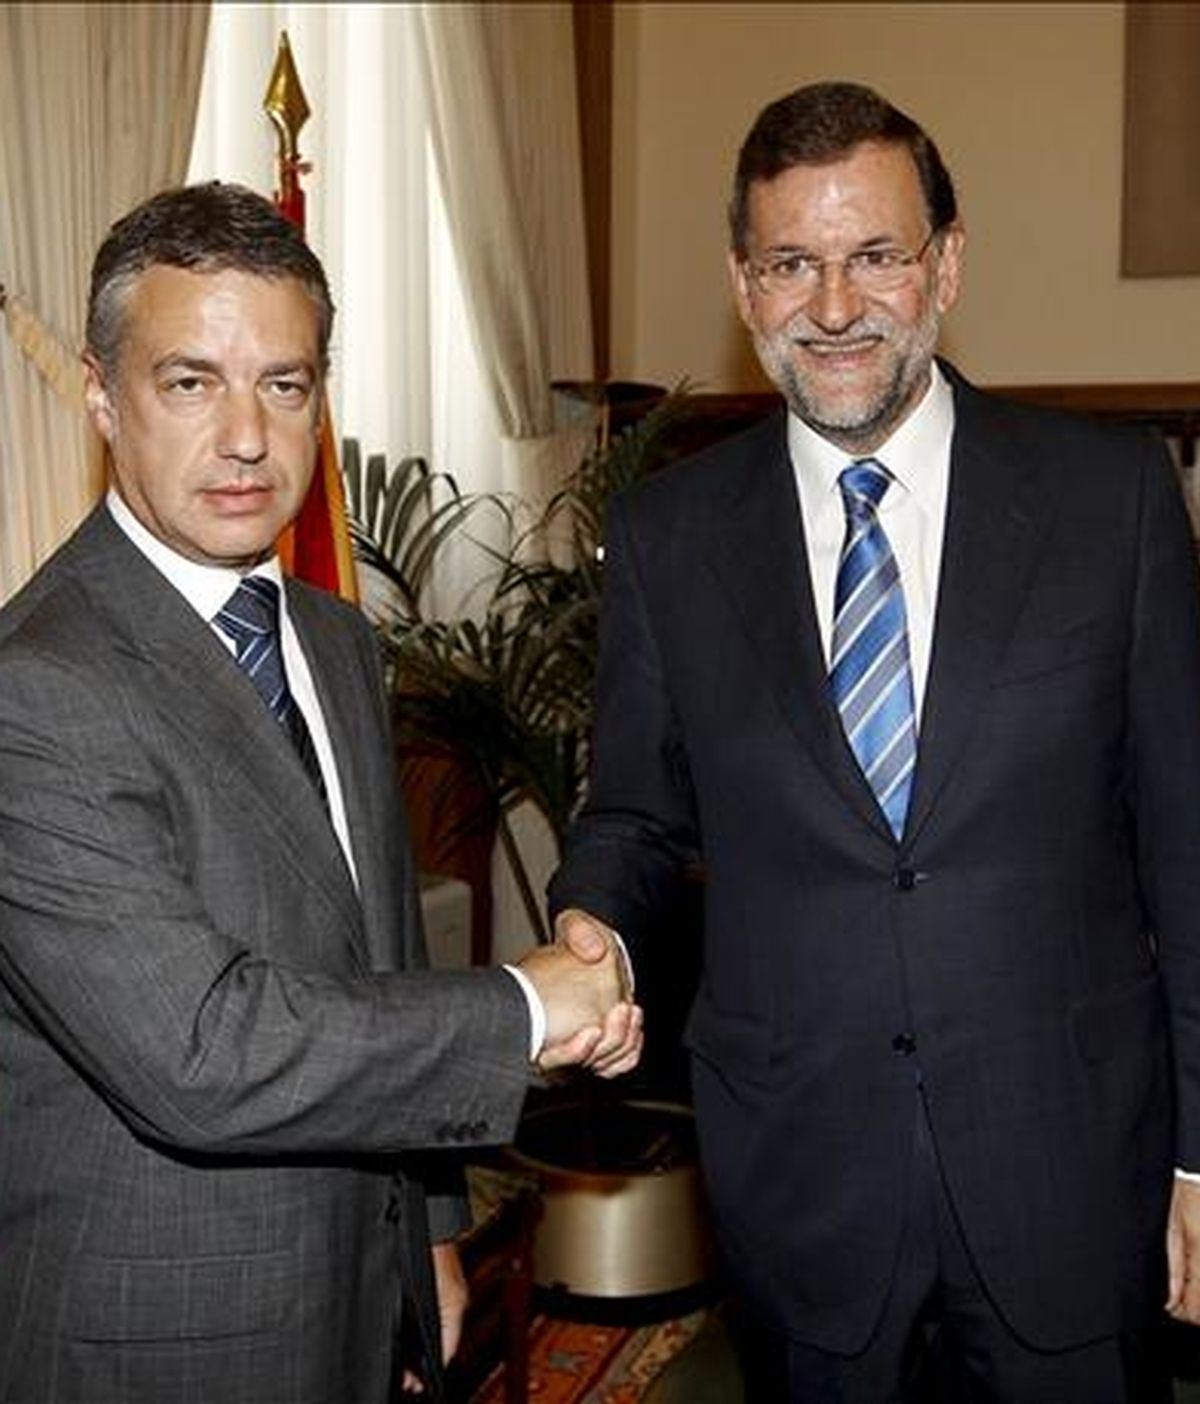 El presidente del PP, Mariano Rajoy (d), y el líder del PNV, Iñigo Urkullu, se saludan momentos antes de mantener, hoy en el Congreso, su primera reunión de carácter oficial con el objetivo de normalizar los vínculos entre ambos partidos tras las tensas relaciones que han mantenido durante años. EFE